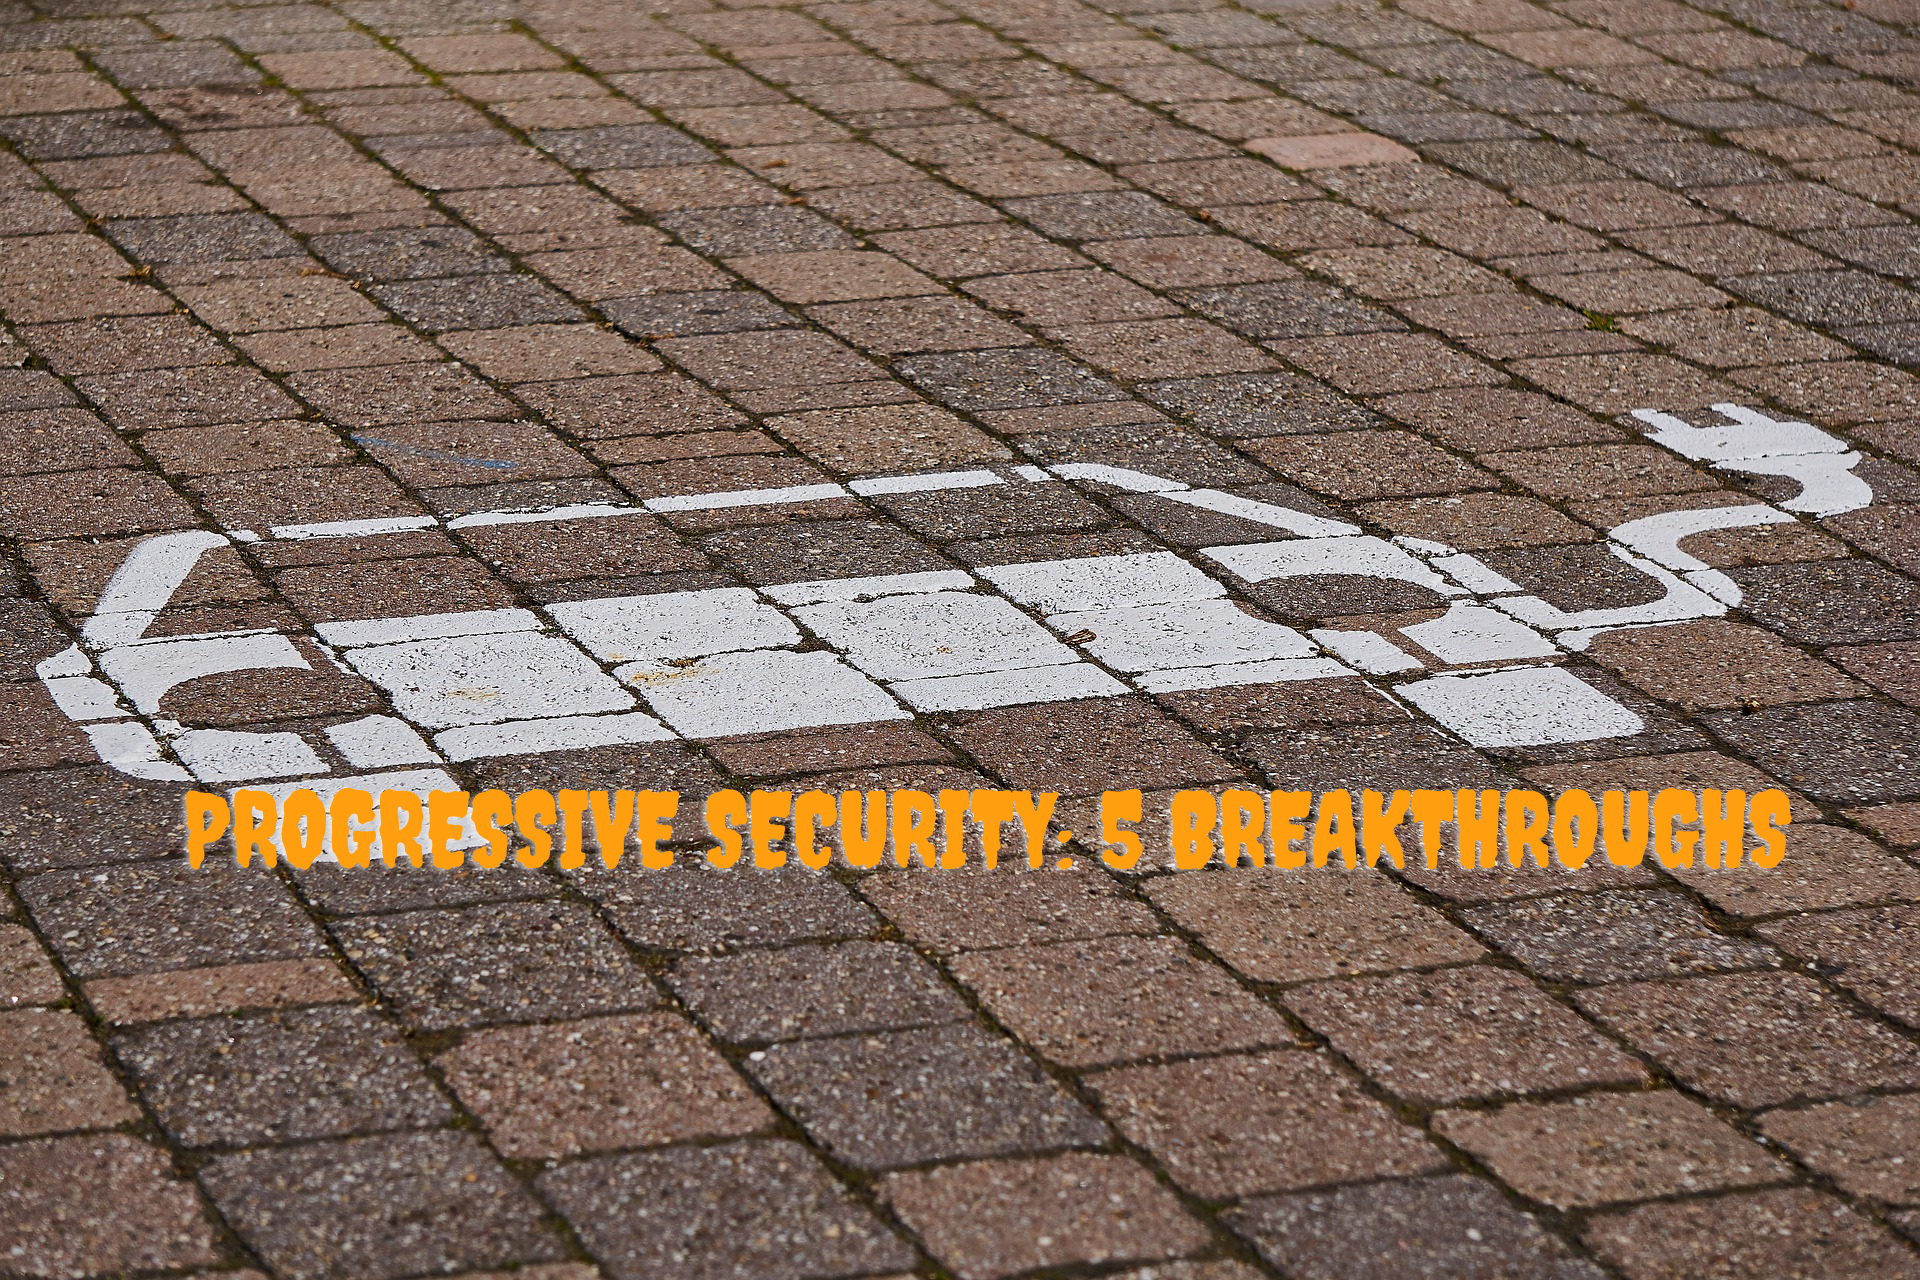 Progressive Security 5 Breakthroughs